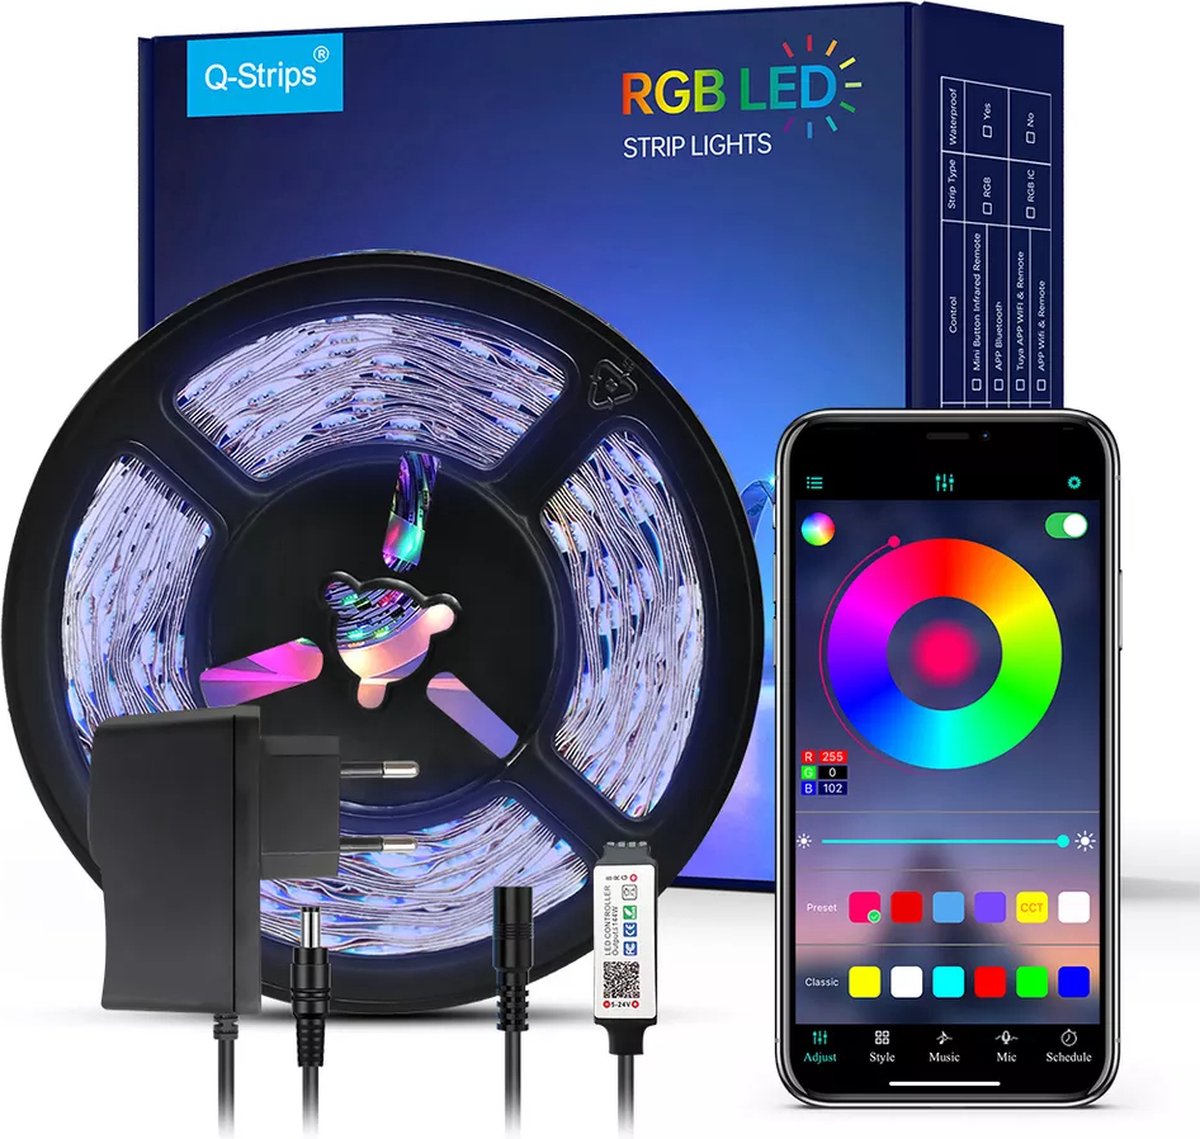 Led strip - 5 meter - RGB - met afstandsbediening en telefoon app - smart LED light verlichting - timer en muziek modus